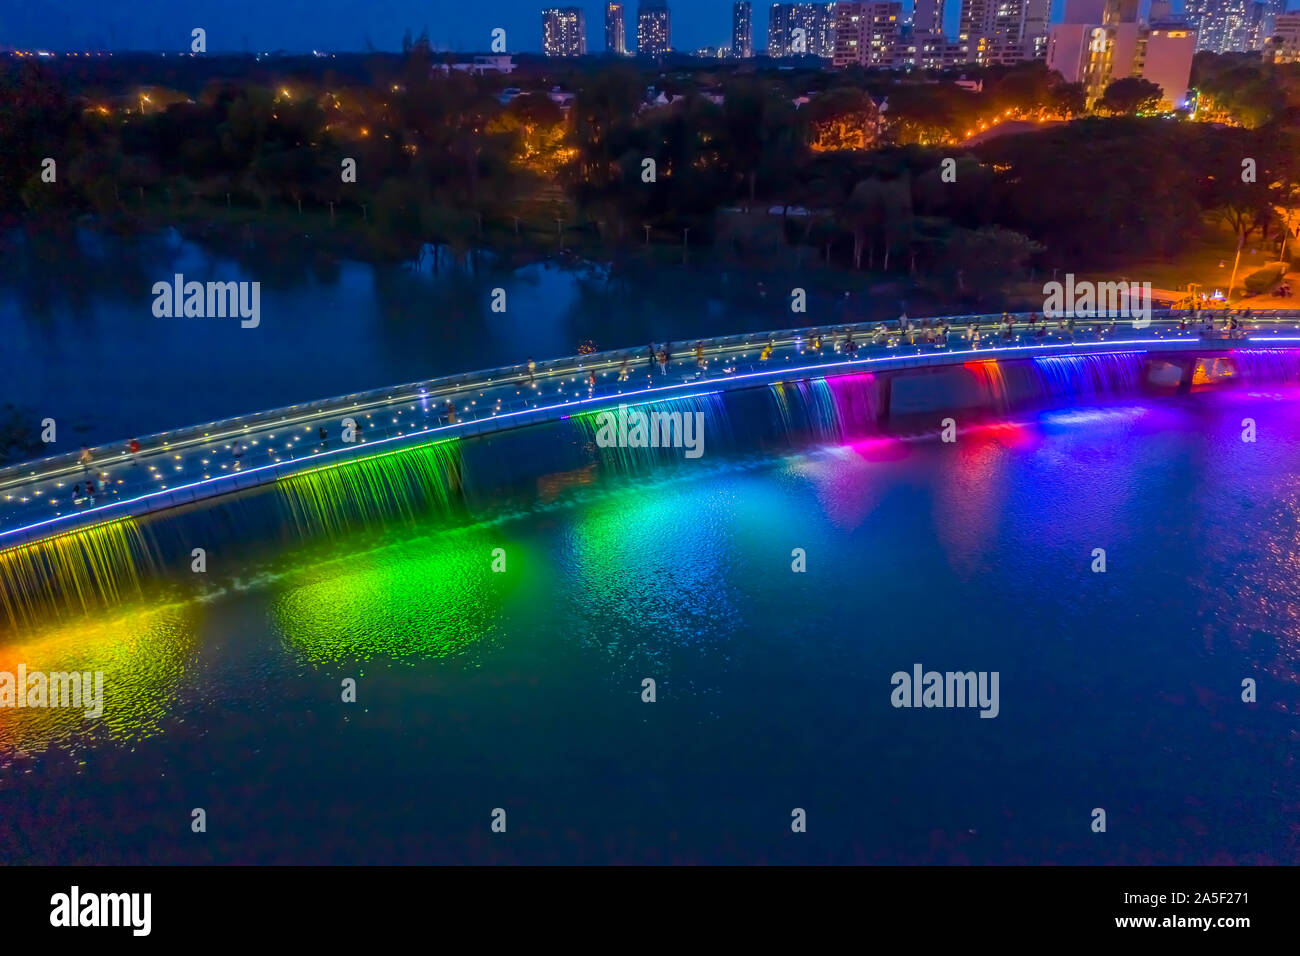 Anh Sao ou Starlight Bridge est un pont piétonnier avec cascade et un éclairage coloré magnifique sur la rivière Saigon. C'est une attraction touristique Banque D'Images